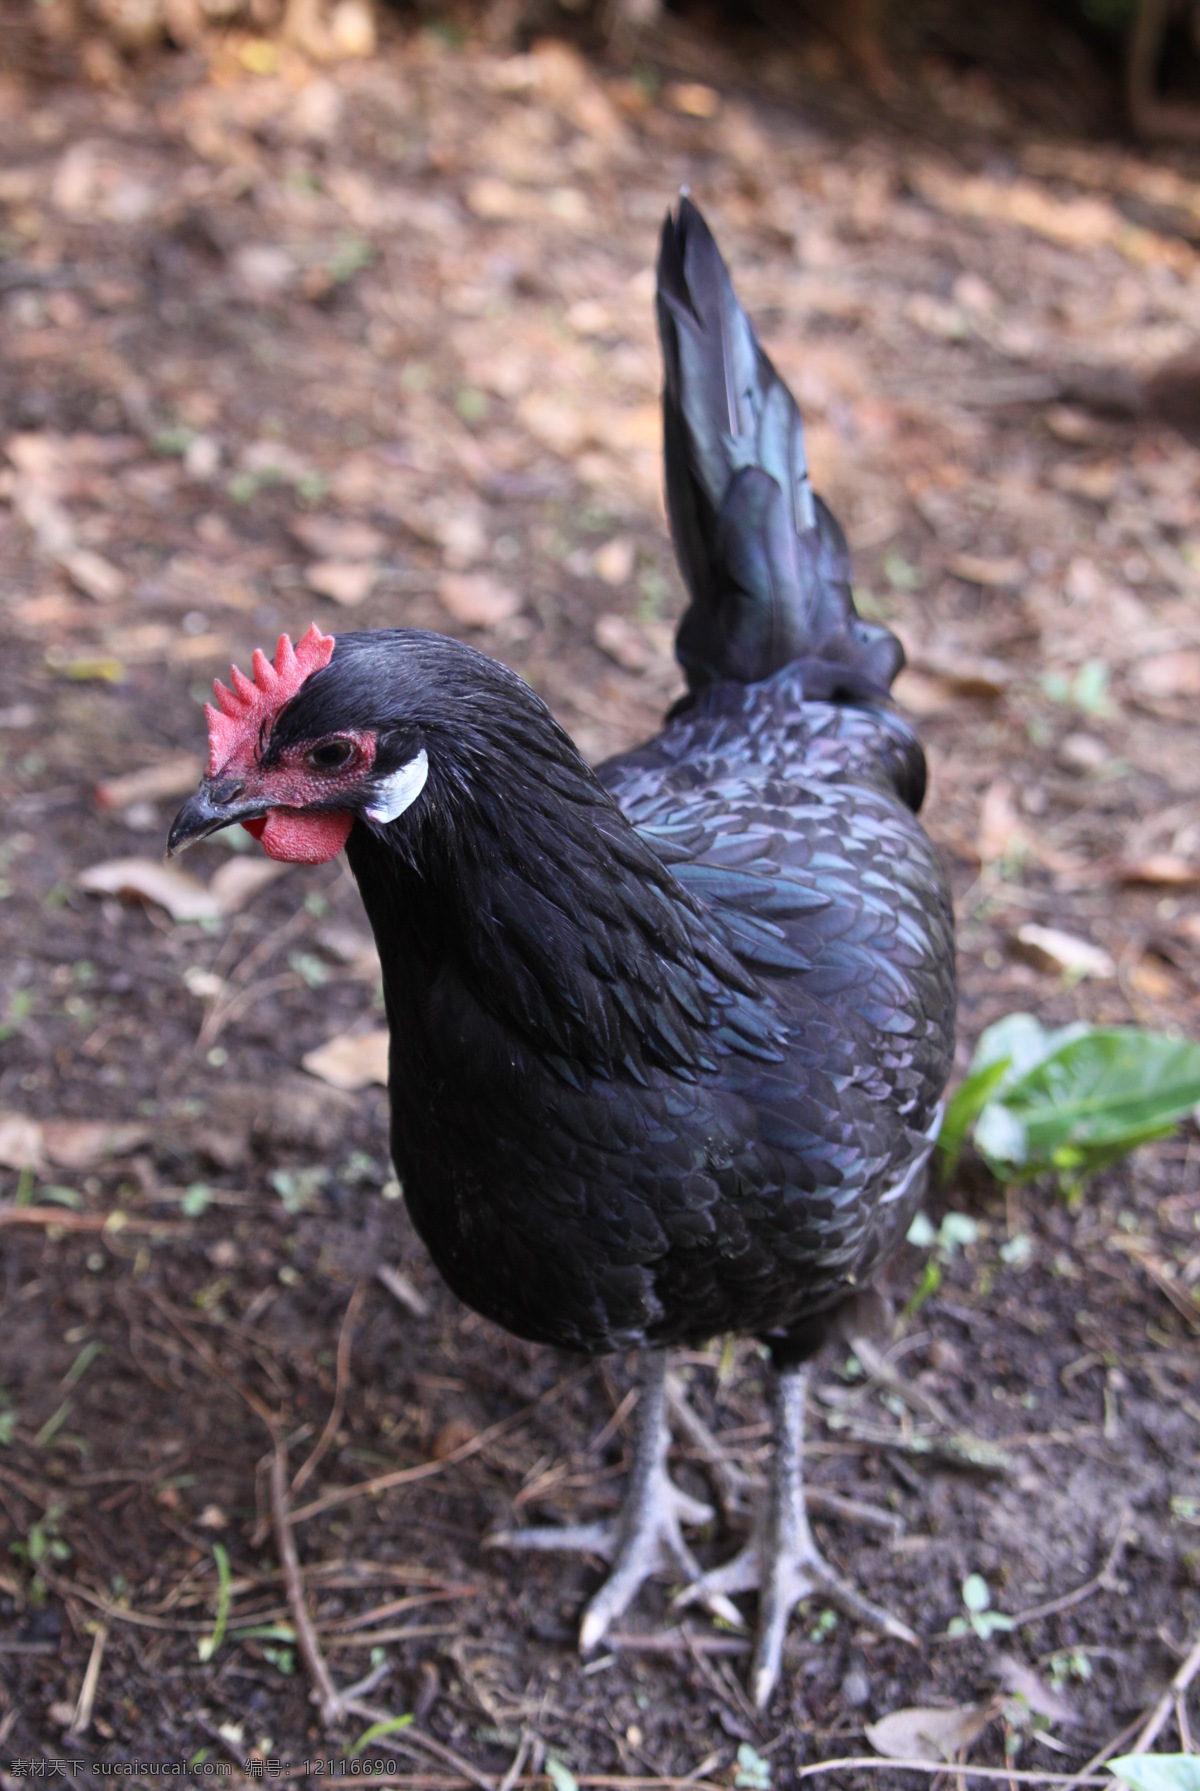 乌骨鸡 黑色 雄鸡 鸡冠 觅食 绿色食品 放养 家禽家畜 生物世界